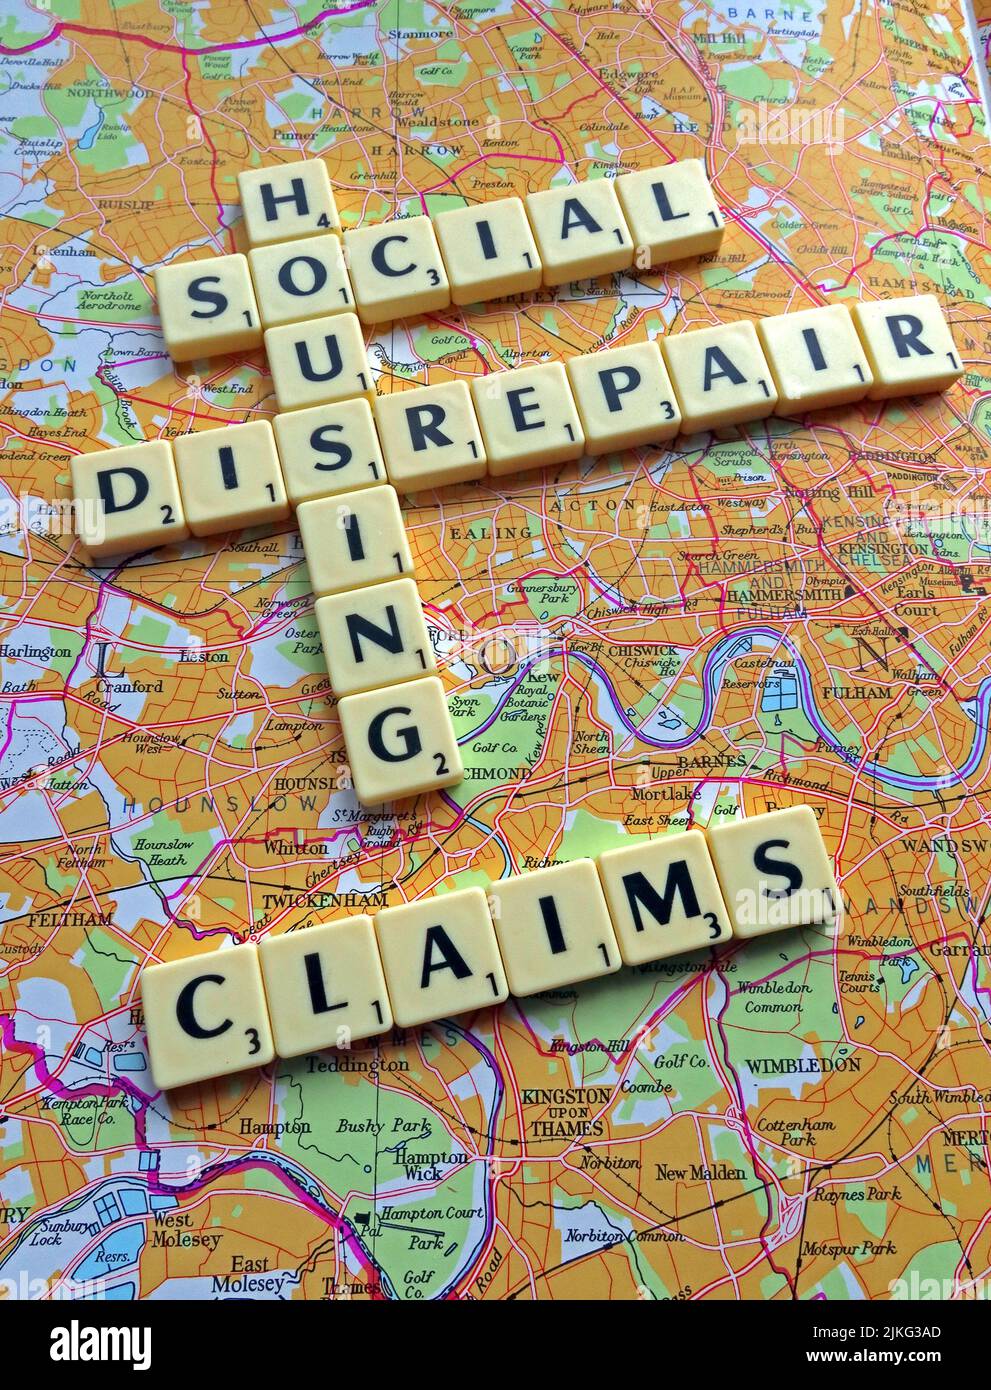 SocialHousing / Council Housing Desreparatur Probleme mit reaktionsschnellen Reparaturen, die in Scrabble-Buchstaben auf einer Karte geschrieben wurden Stockfoto